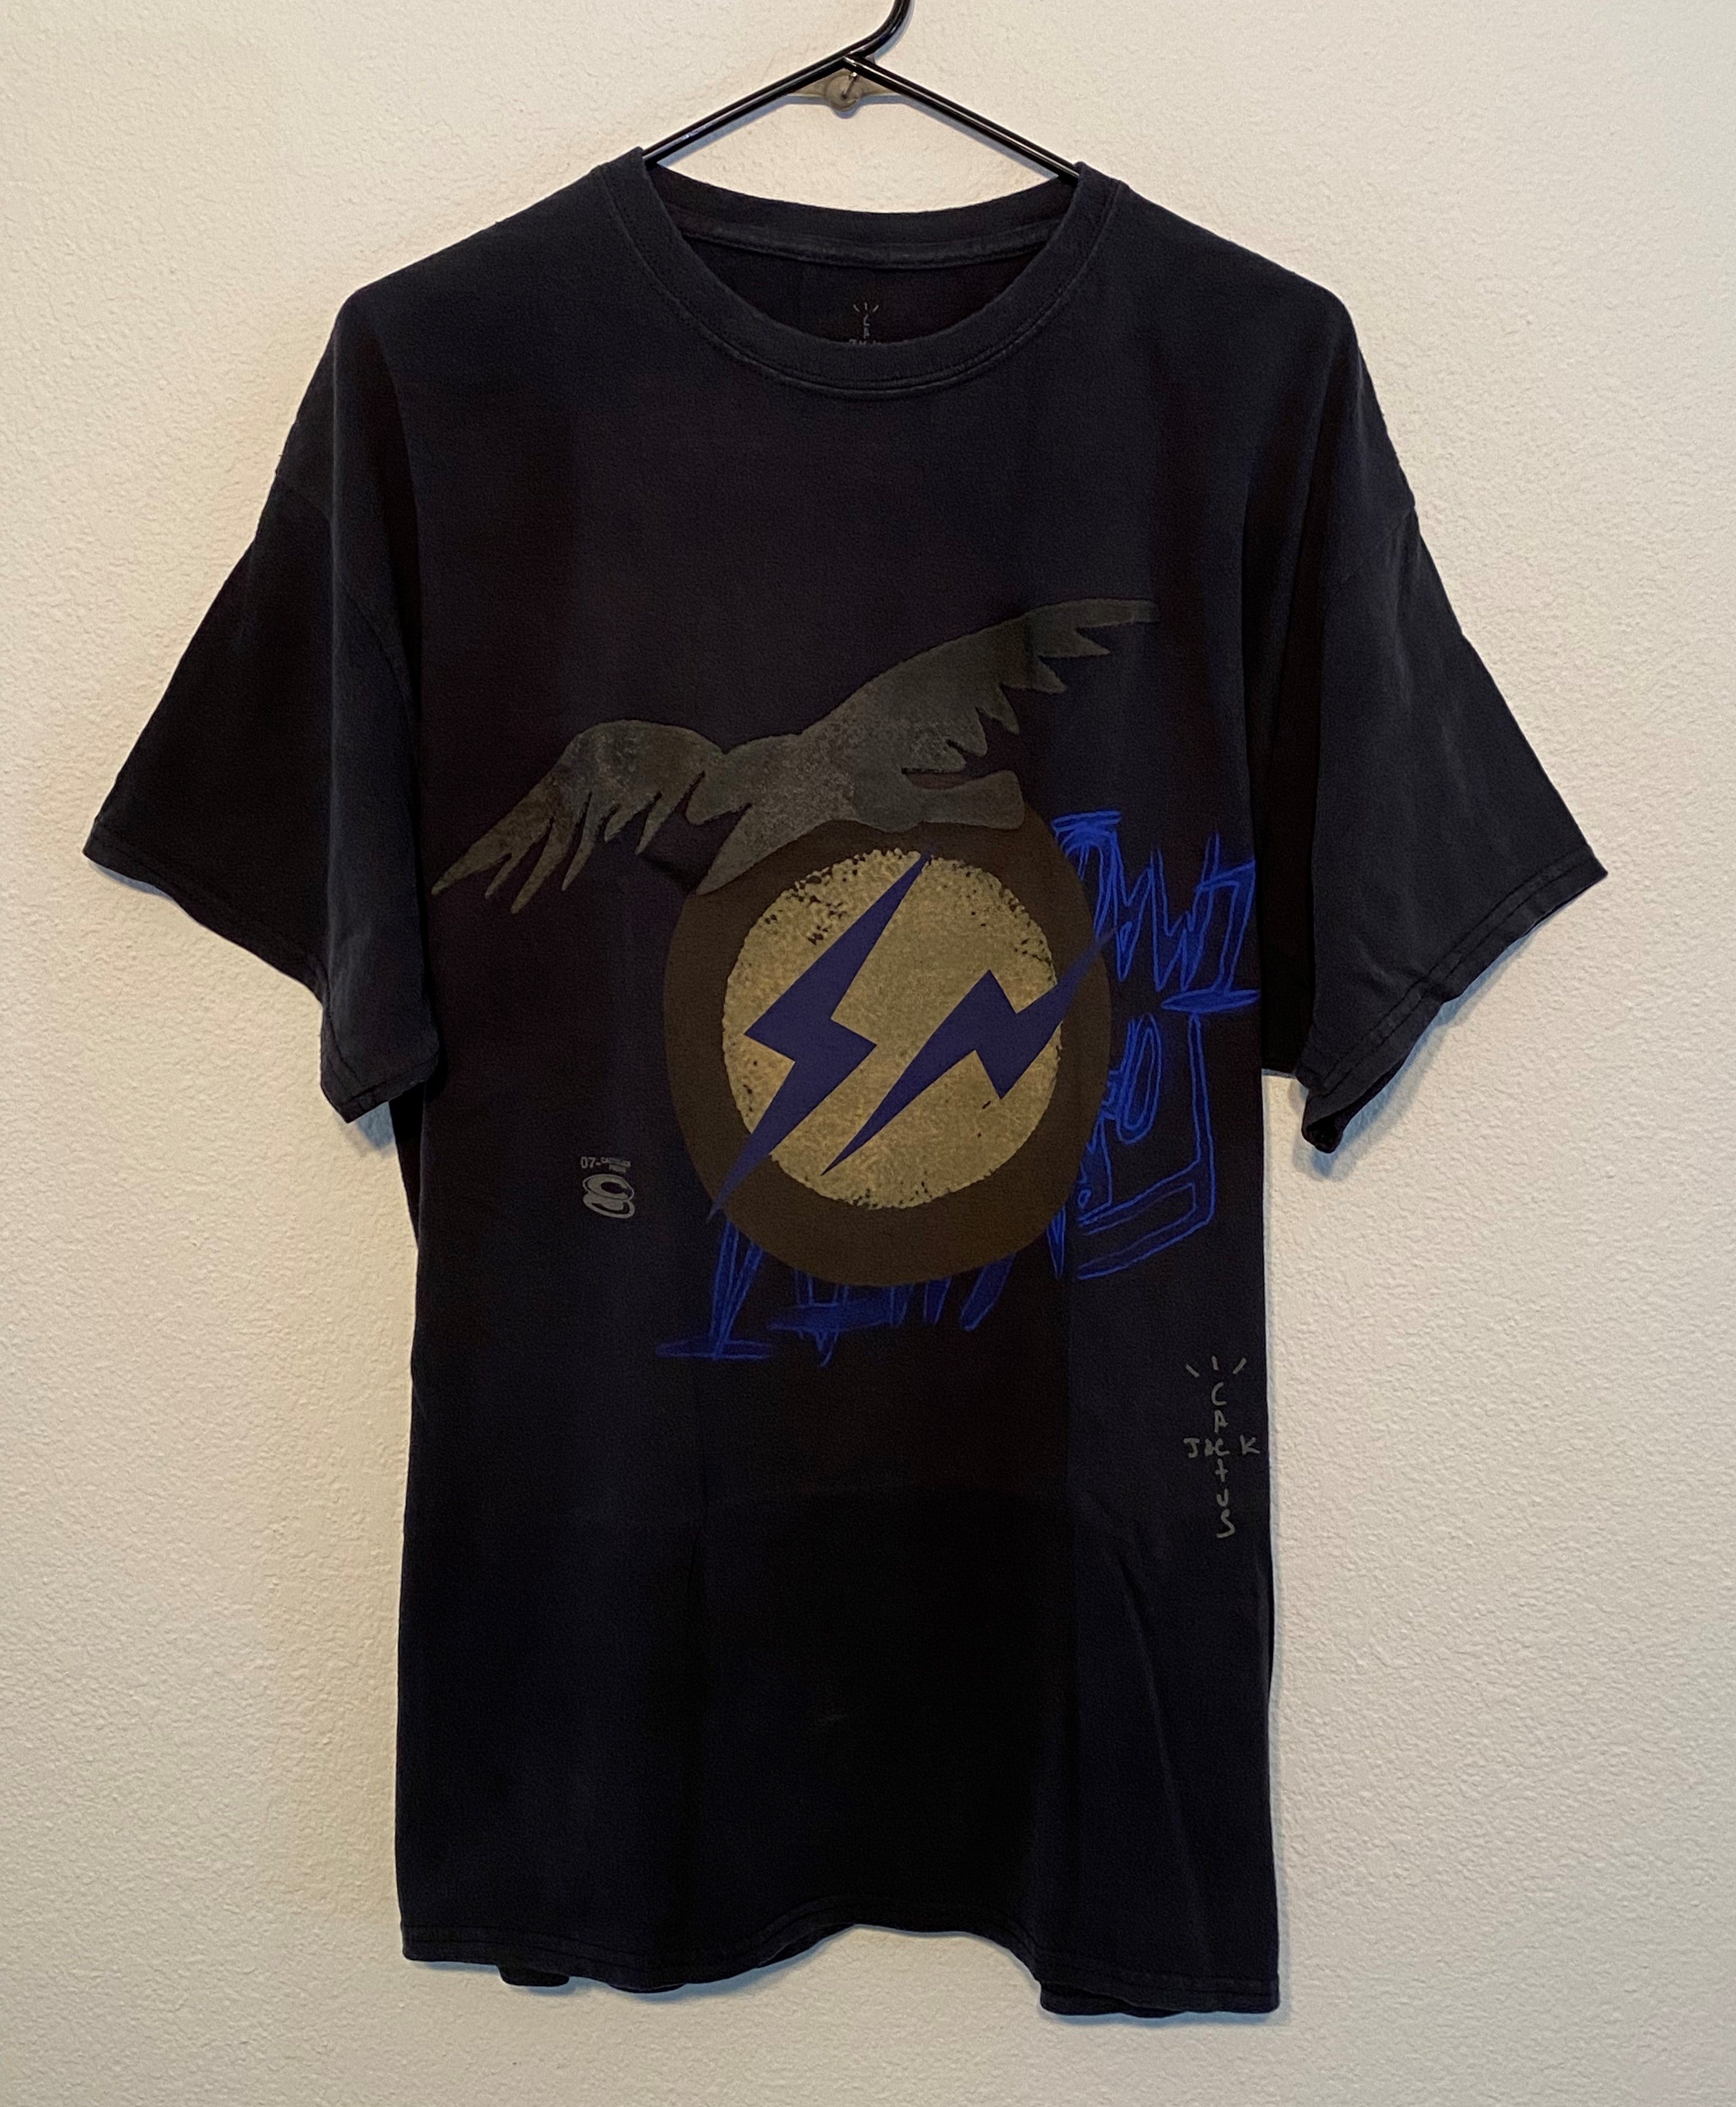 Travis Scott Cactus Jack Laflame Rapper Graphic Black Rap T-Shirt Size Med  Rare